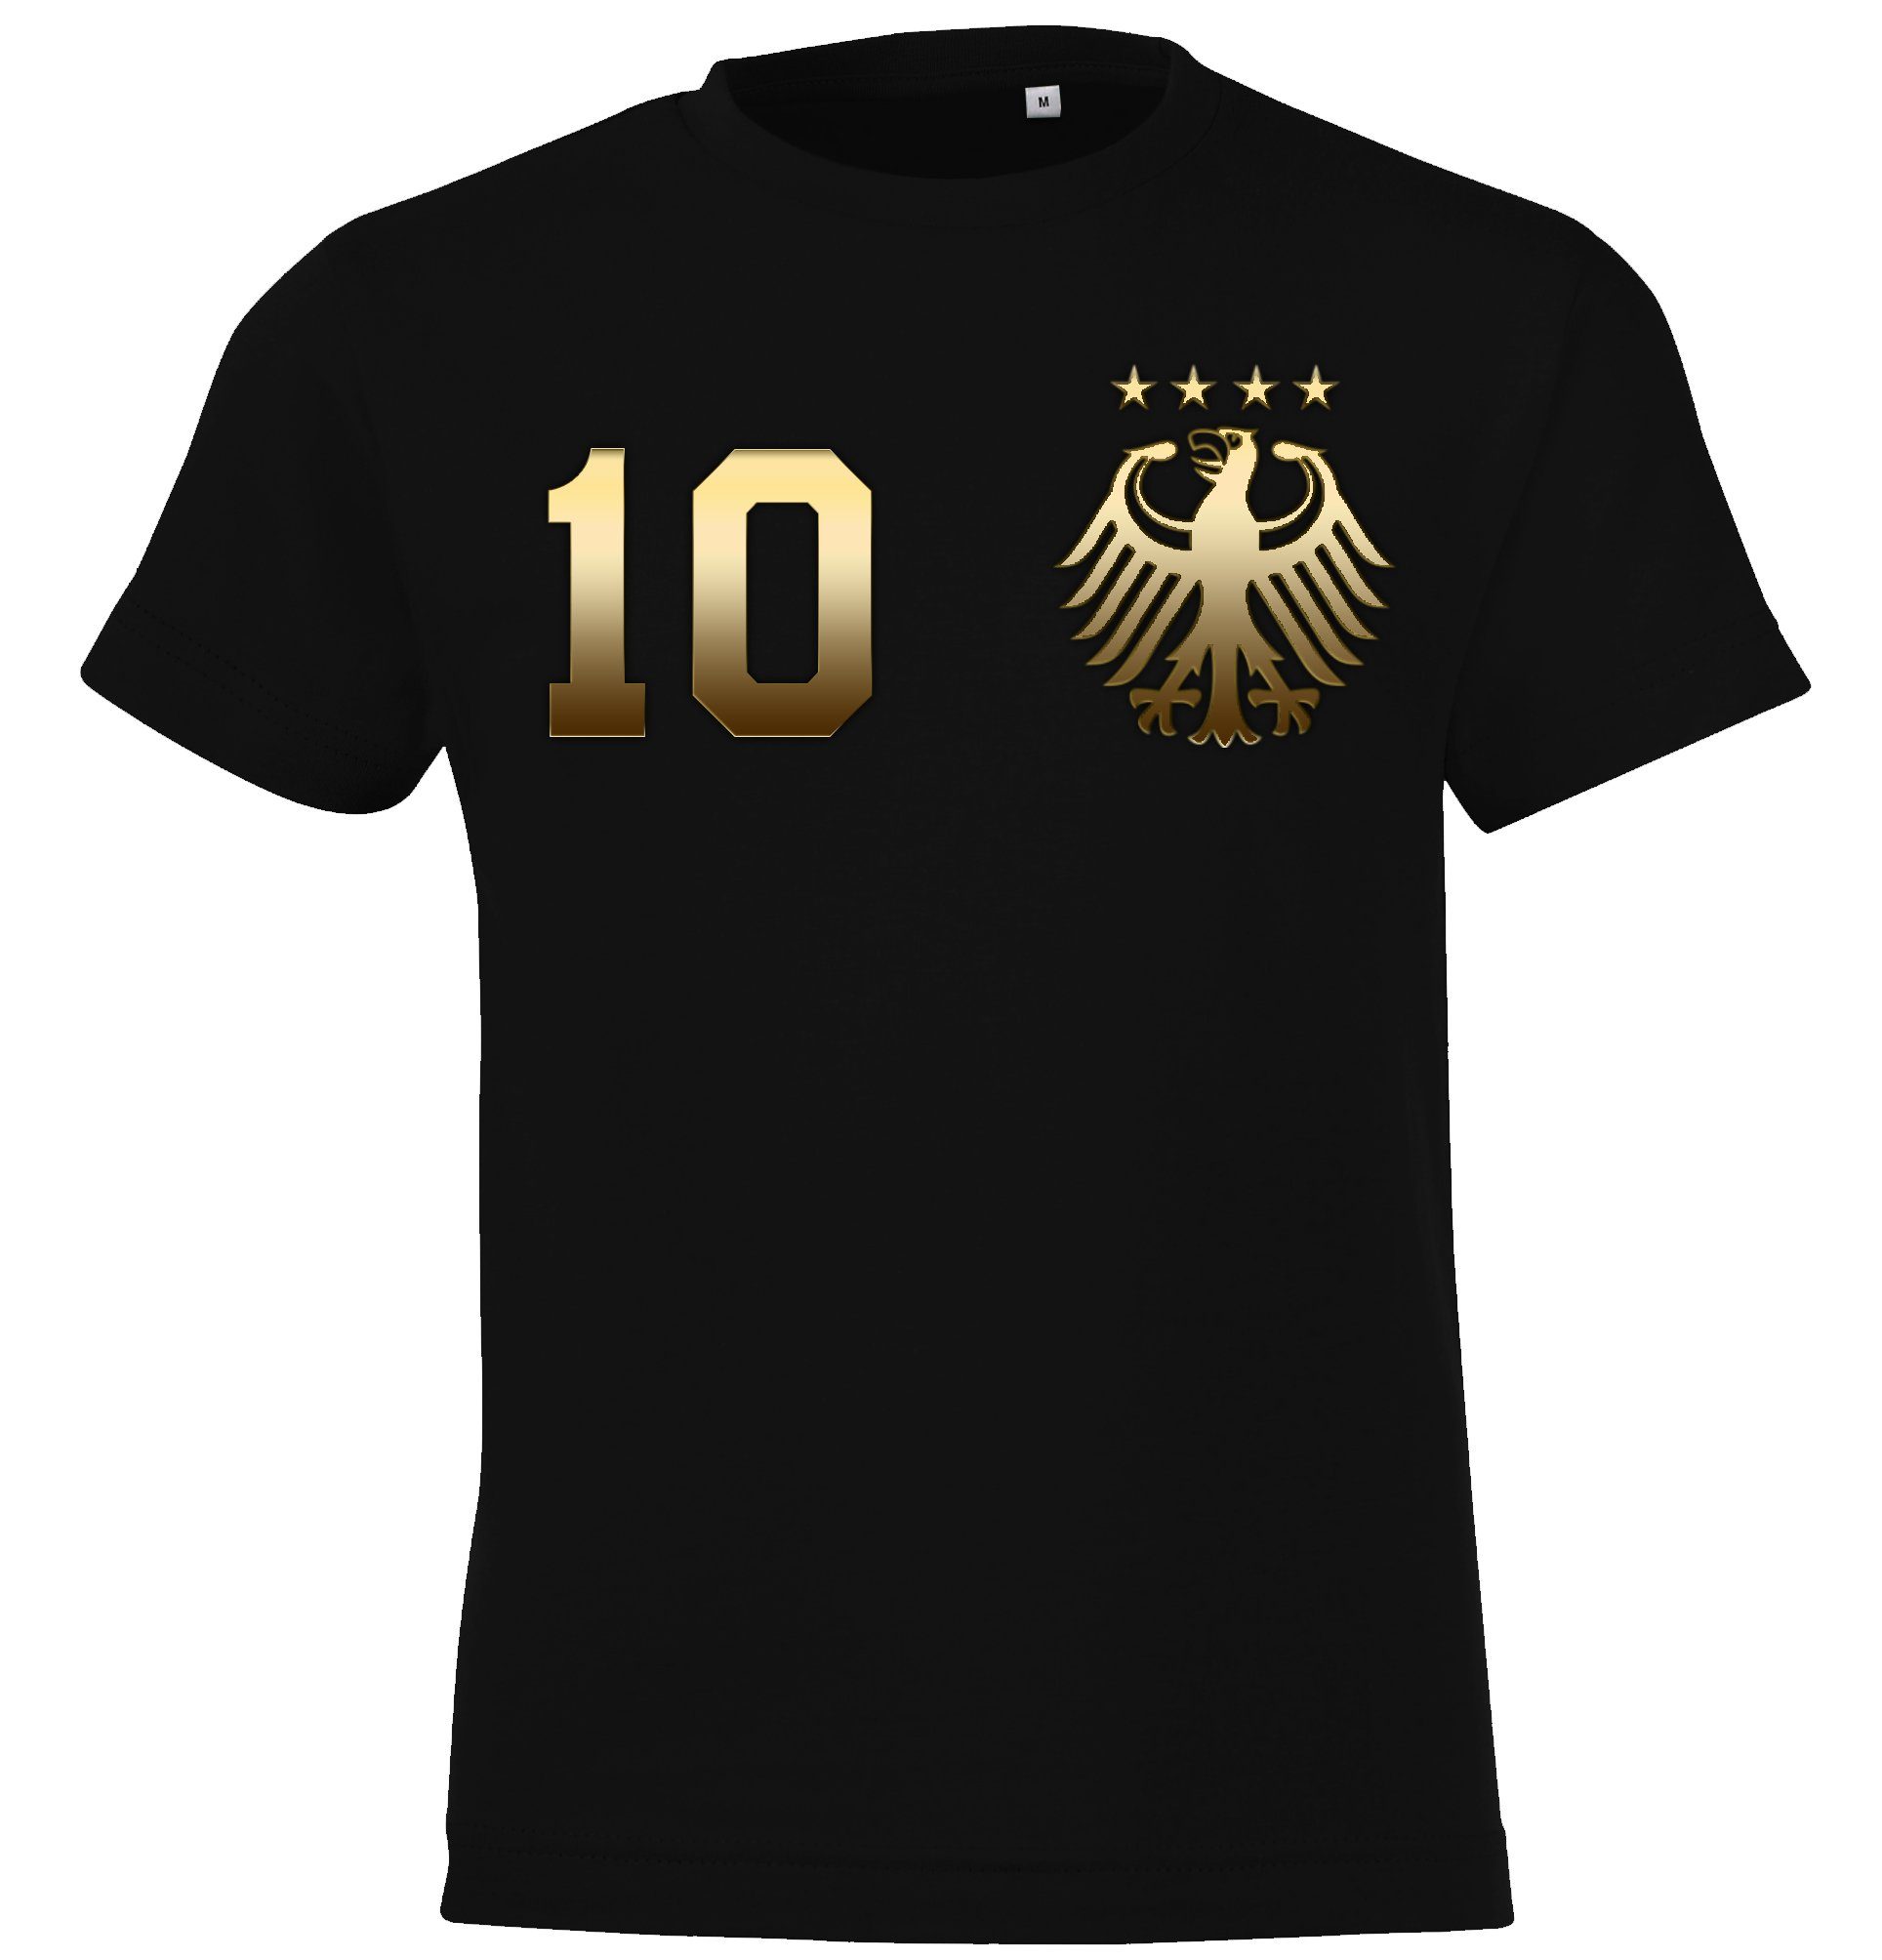 Trikot Designz trendigem Gold-Schwarz im Fußball Motiv T-Shirt Deutschland mit Youth Look T-Shirt Kinder